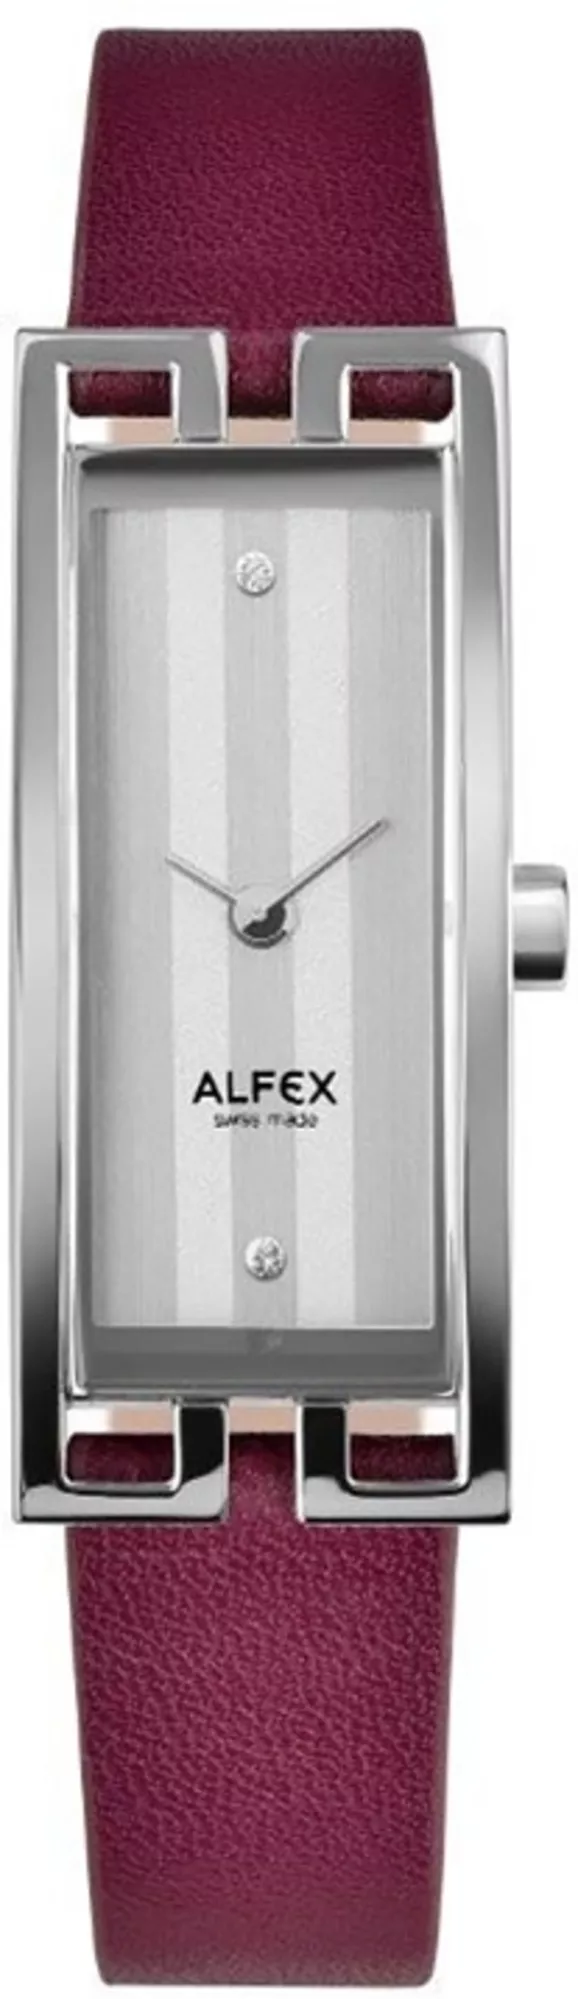 Часы Alfex 5662/2157